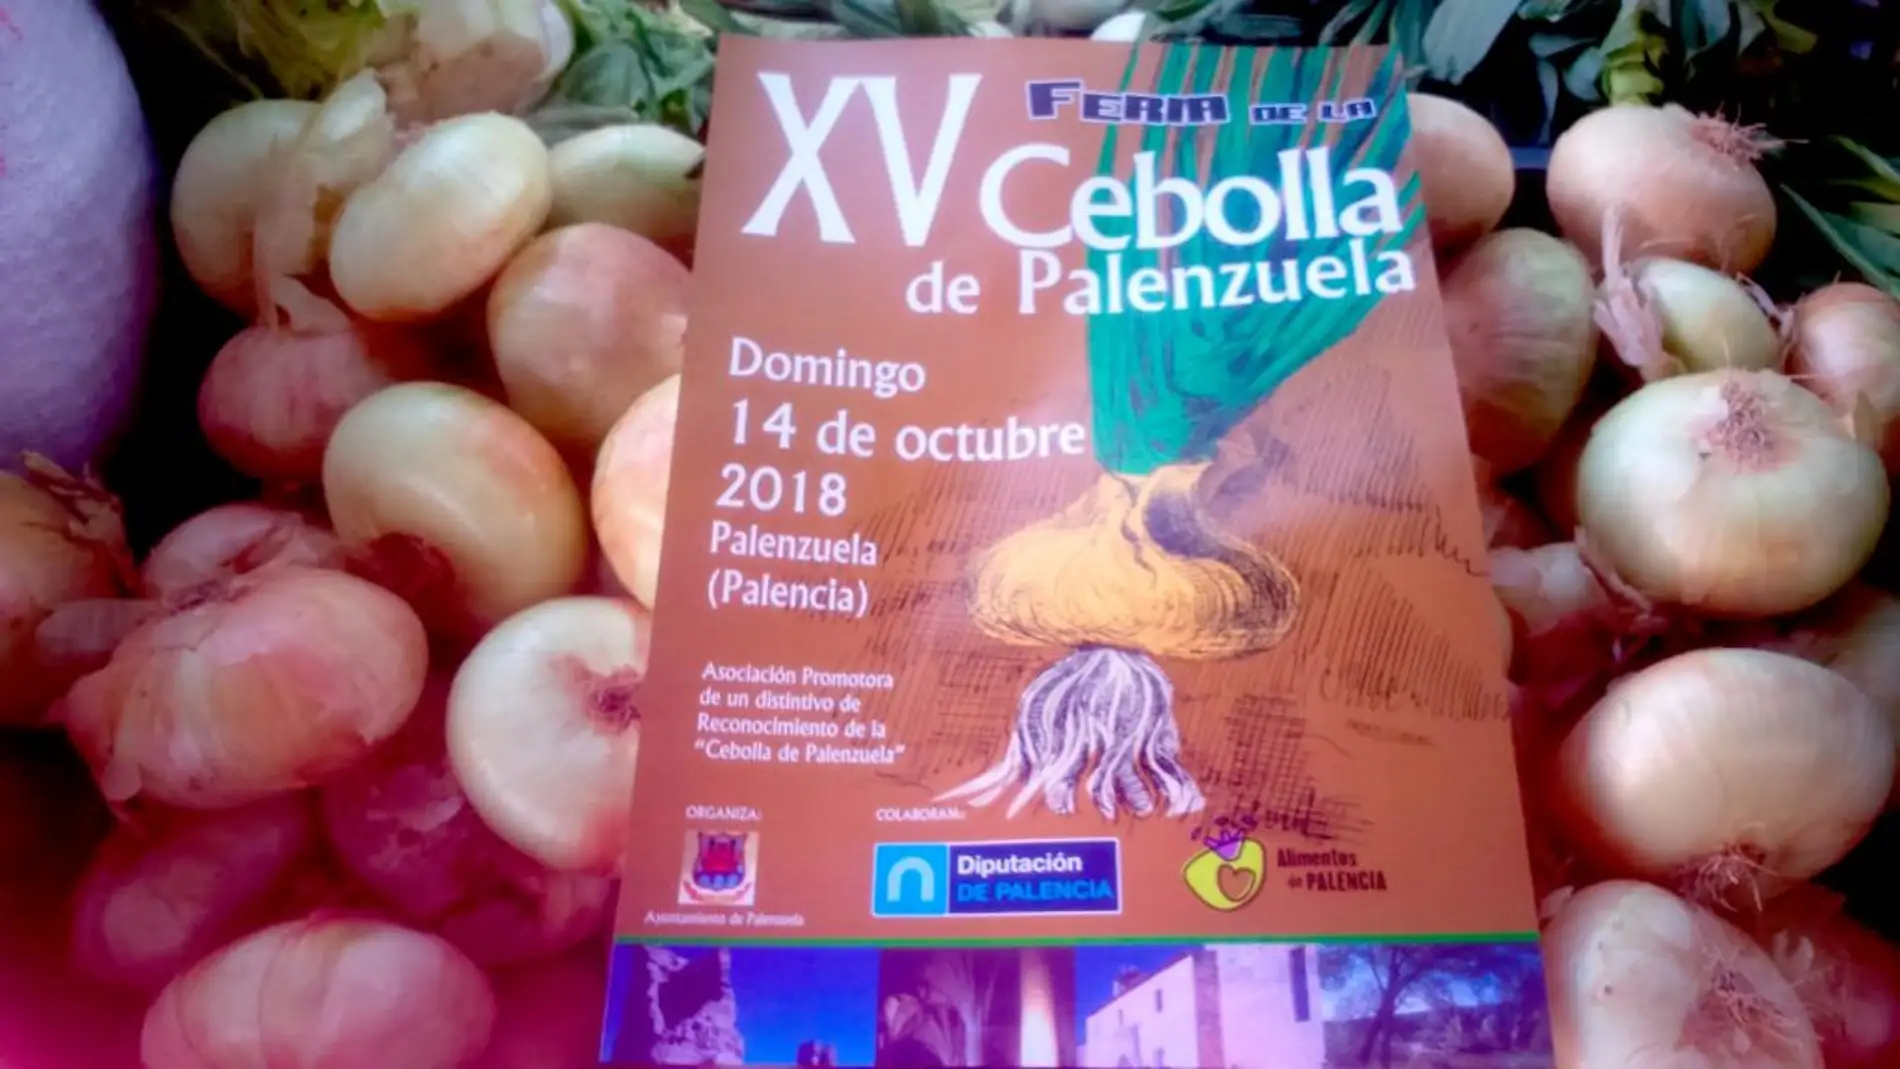 Los productores de cebolla de Palenzuela afectados por la situación de la hostelería